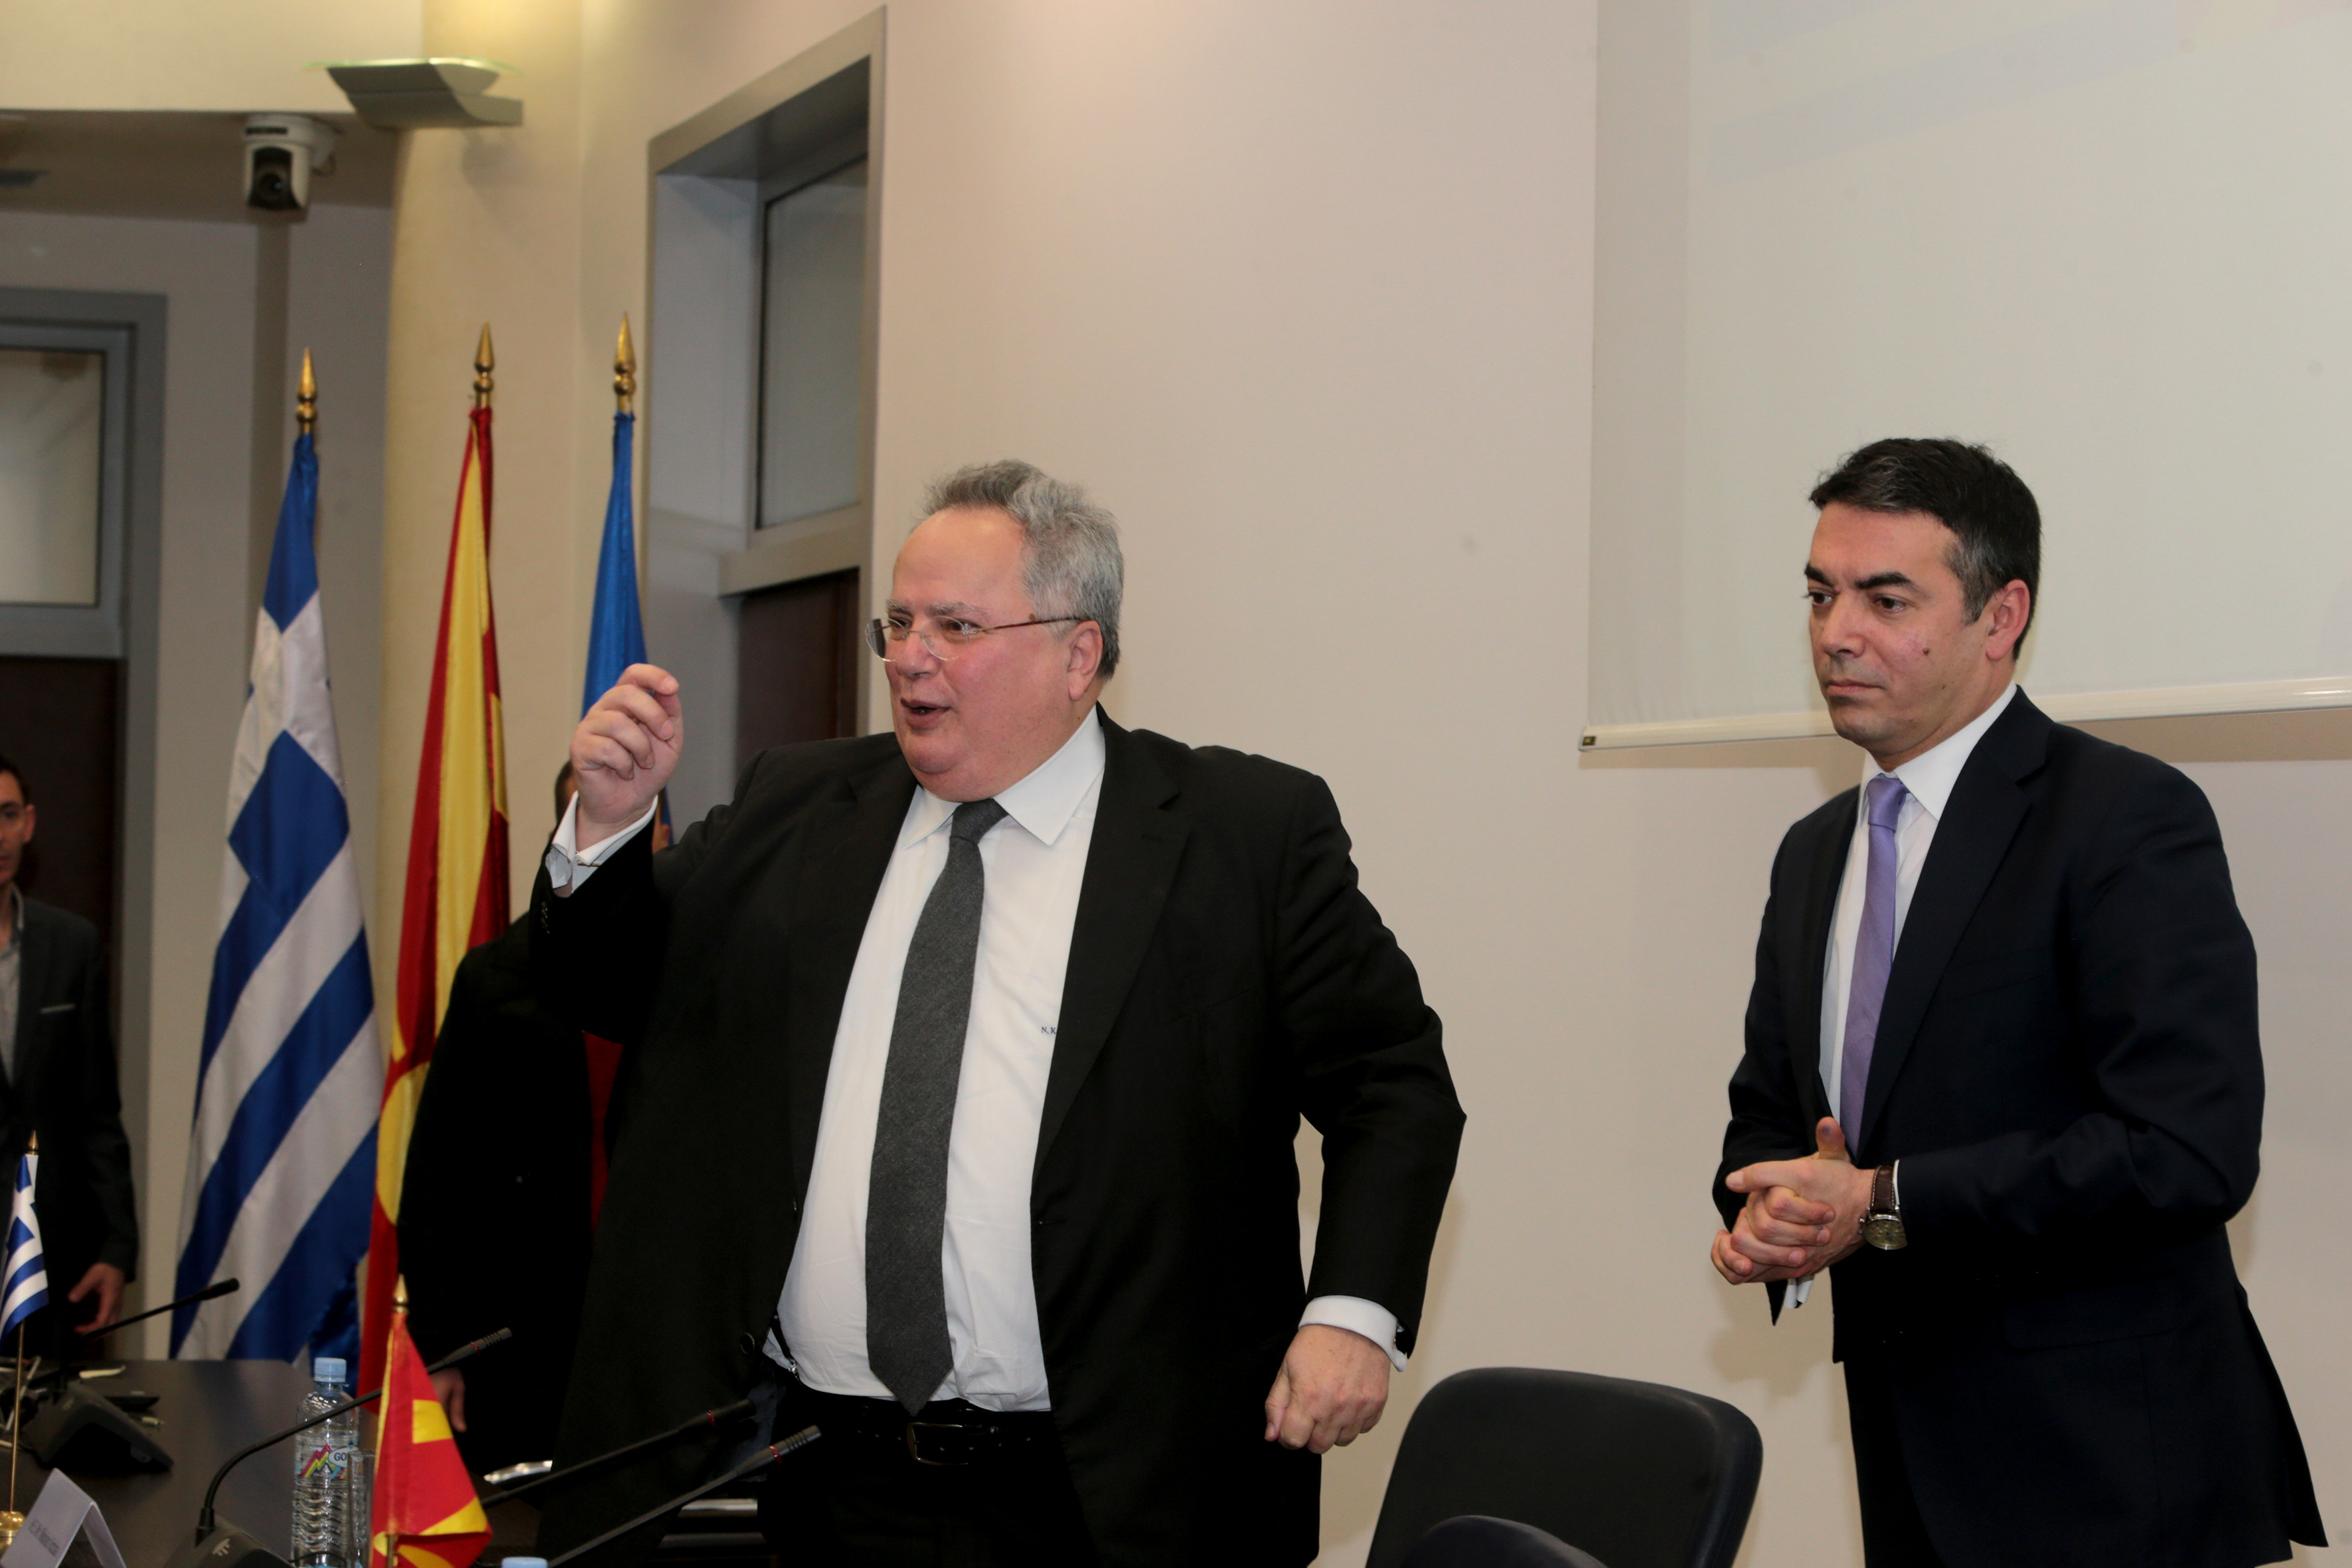 New round of FYROM talks with Nimetz in Vienna next week